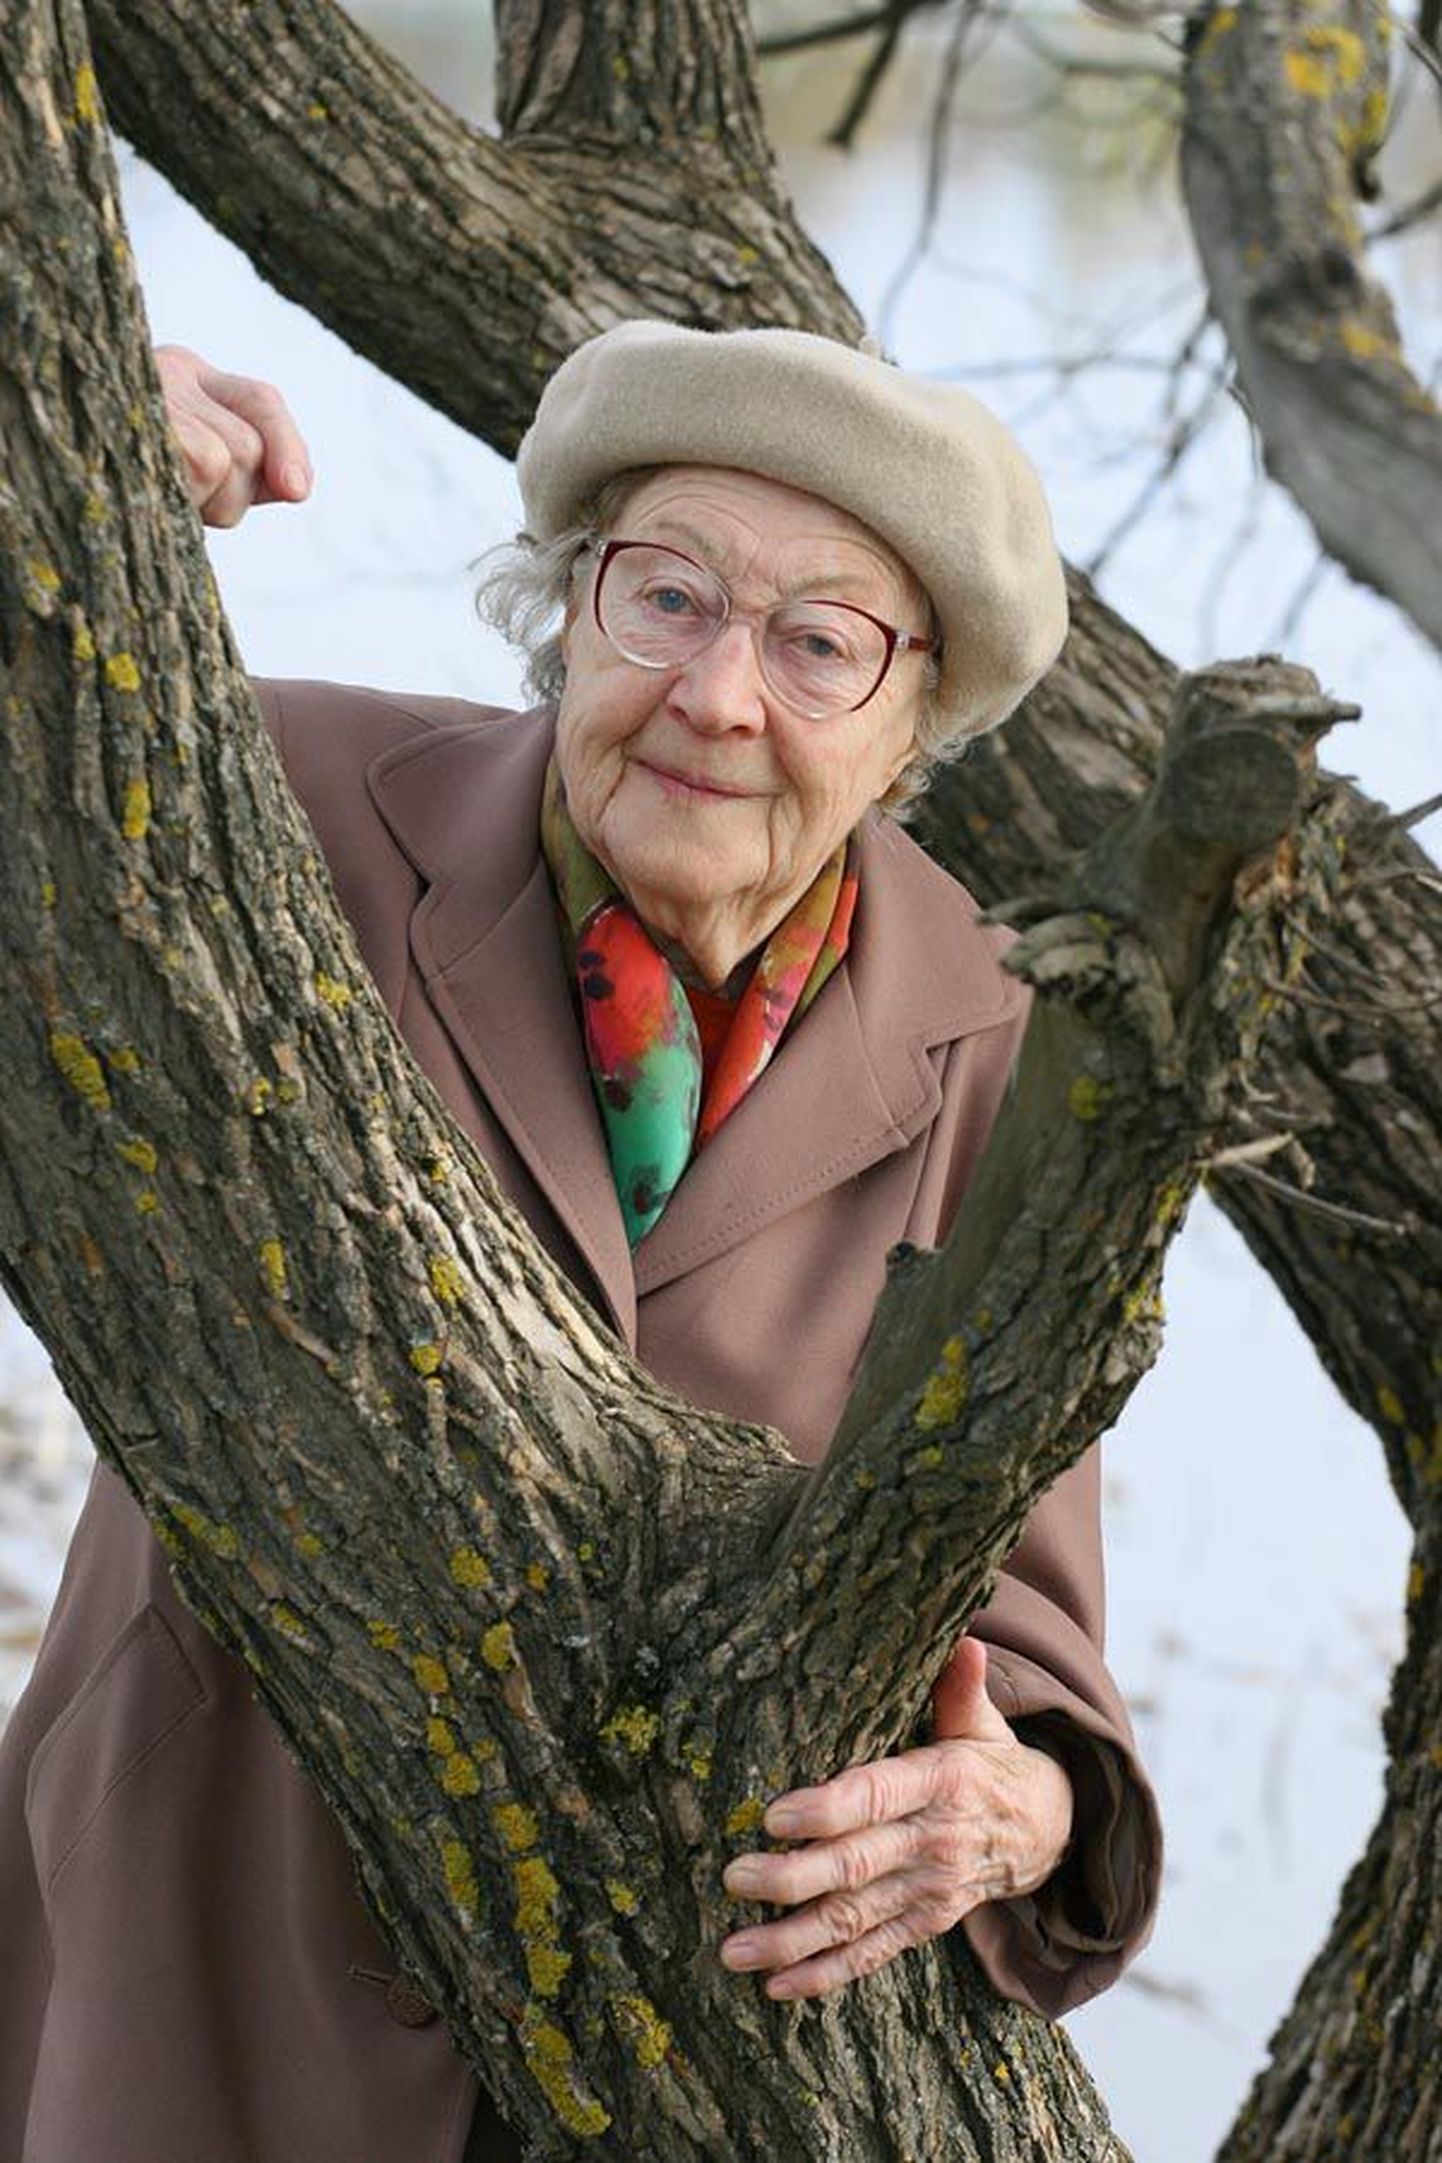 Ümber Viljandi järve jooksul aastakümneid osalenud Vanda Helene Pehap jooksis ümber järve viimati 1989. aastal, kui ta oli 66-aastane. Nüüd meeldib talle teistele kaasa elada.